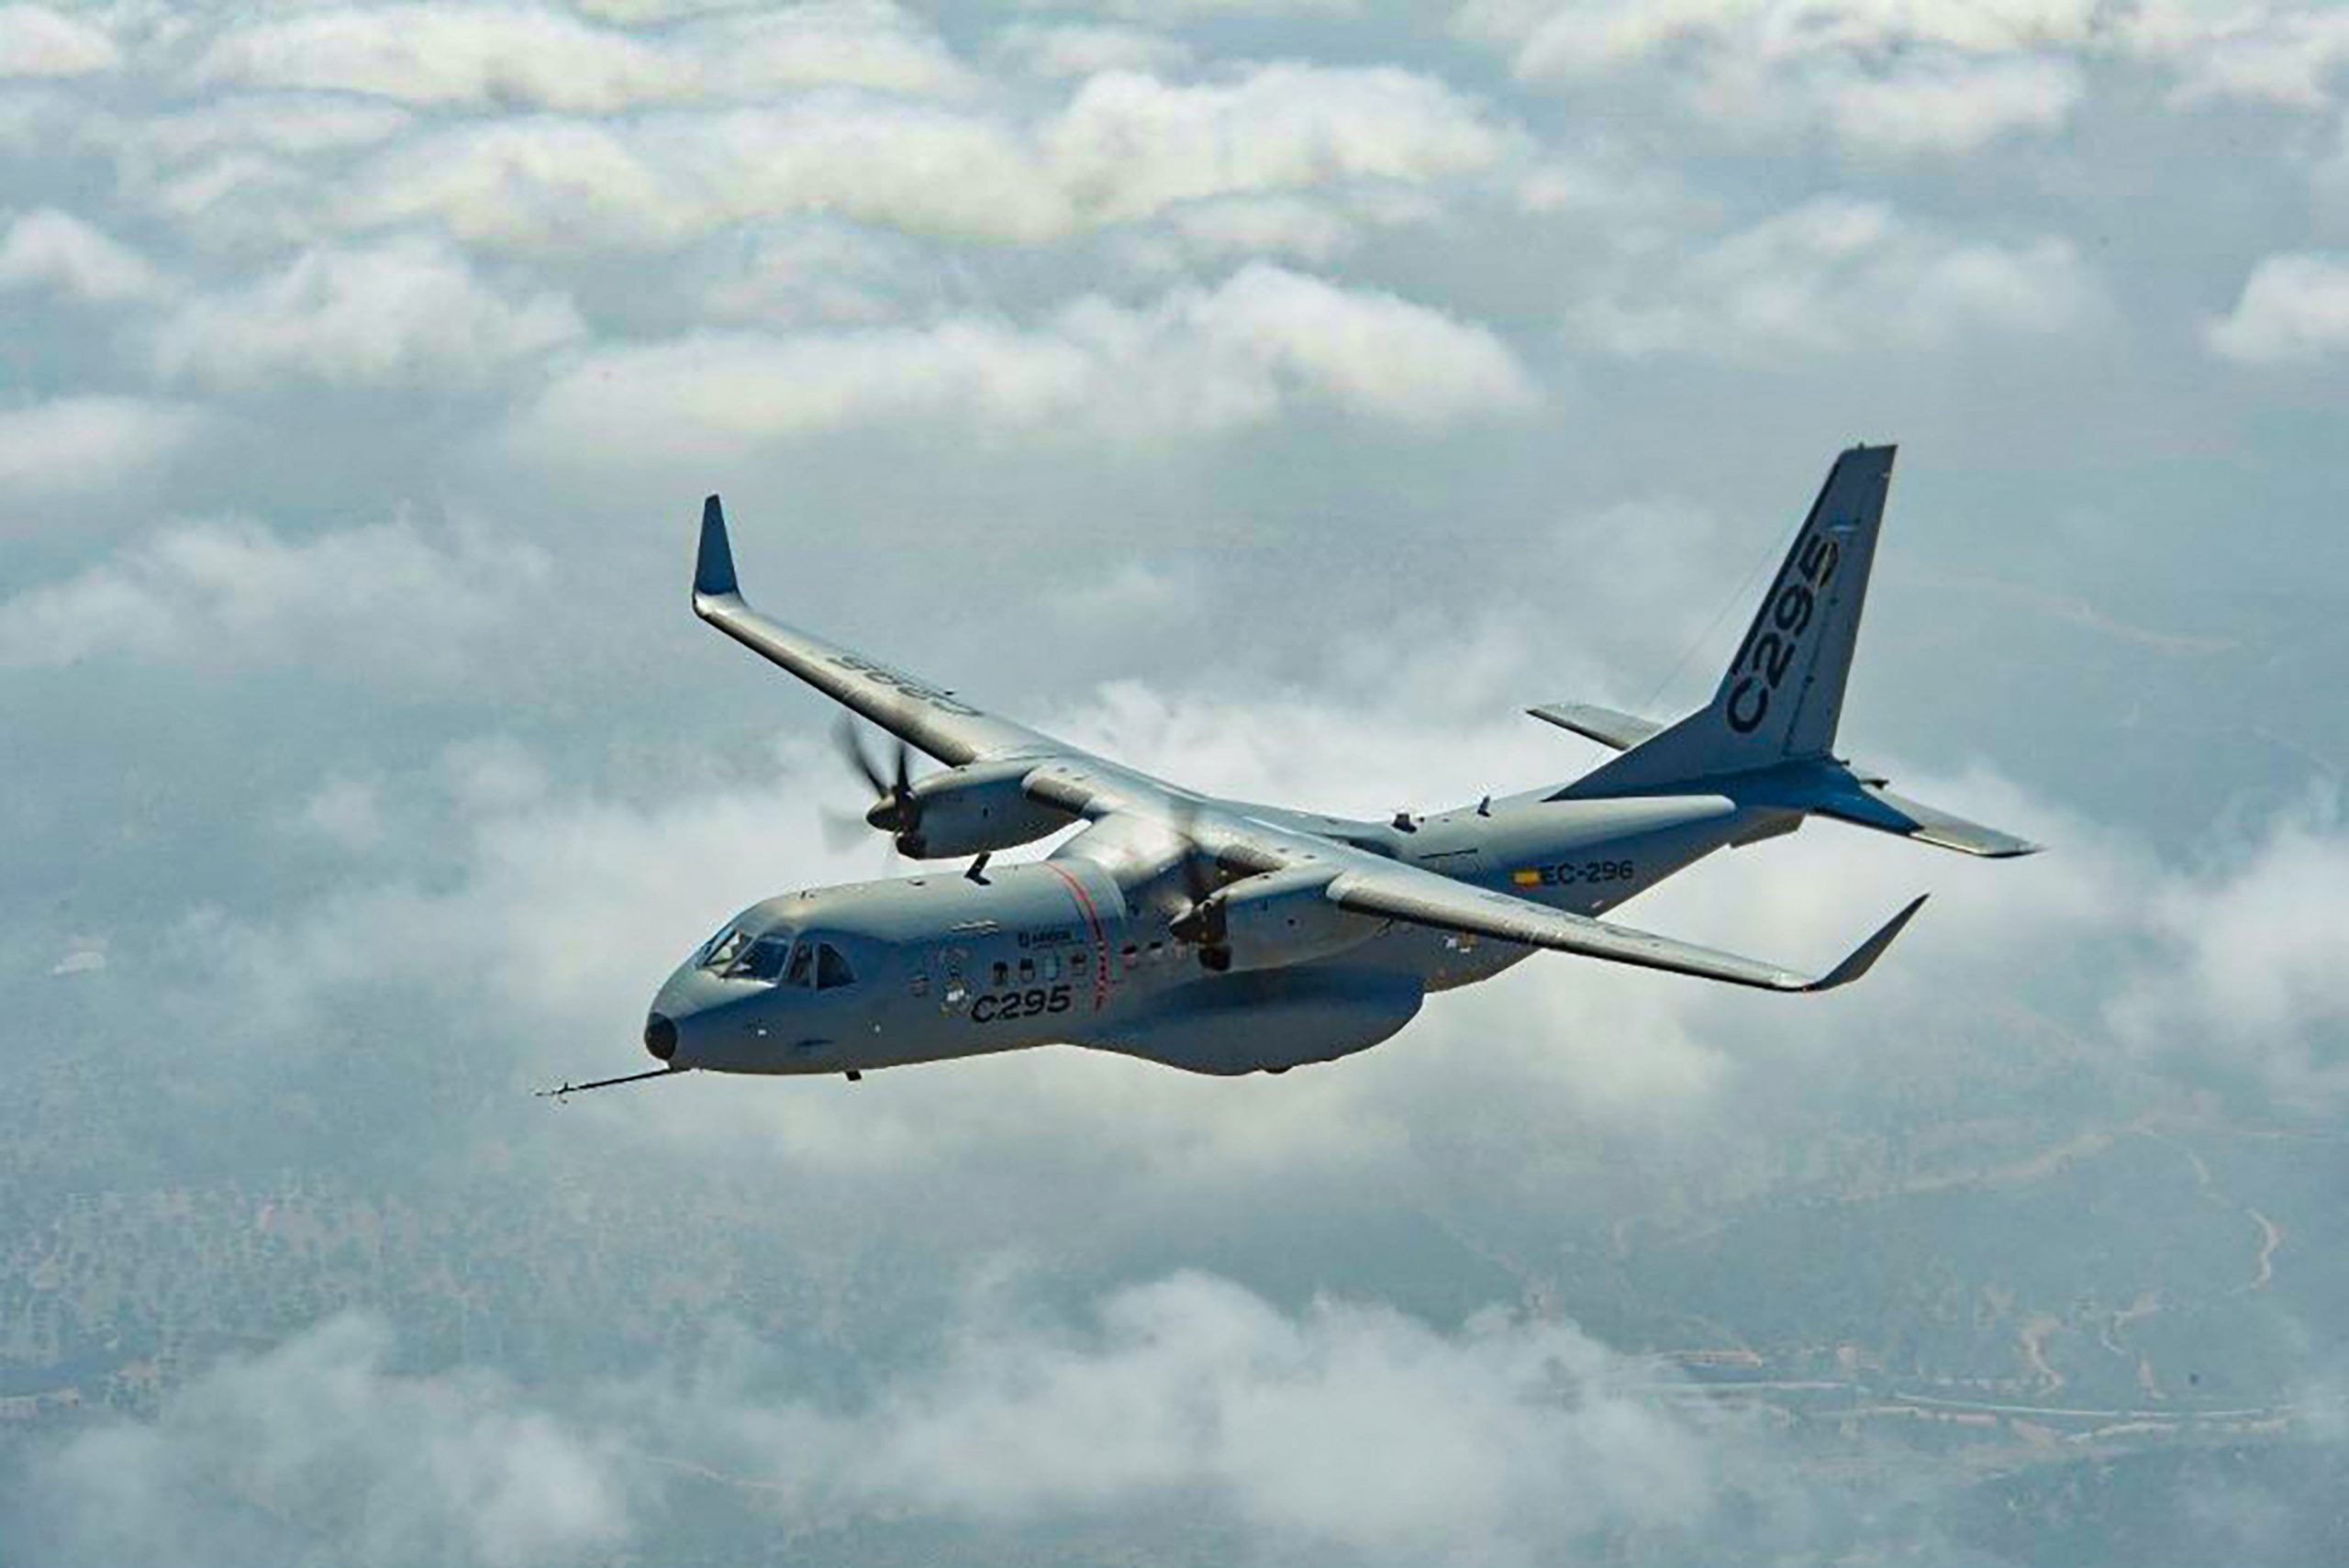 C-295 विमान 10 टन का वजन लेकर भर सकता है उड़ान, खासियत सुन दंग रह जाएंगे आप!